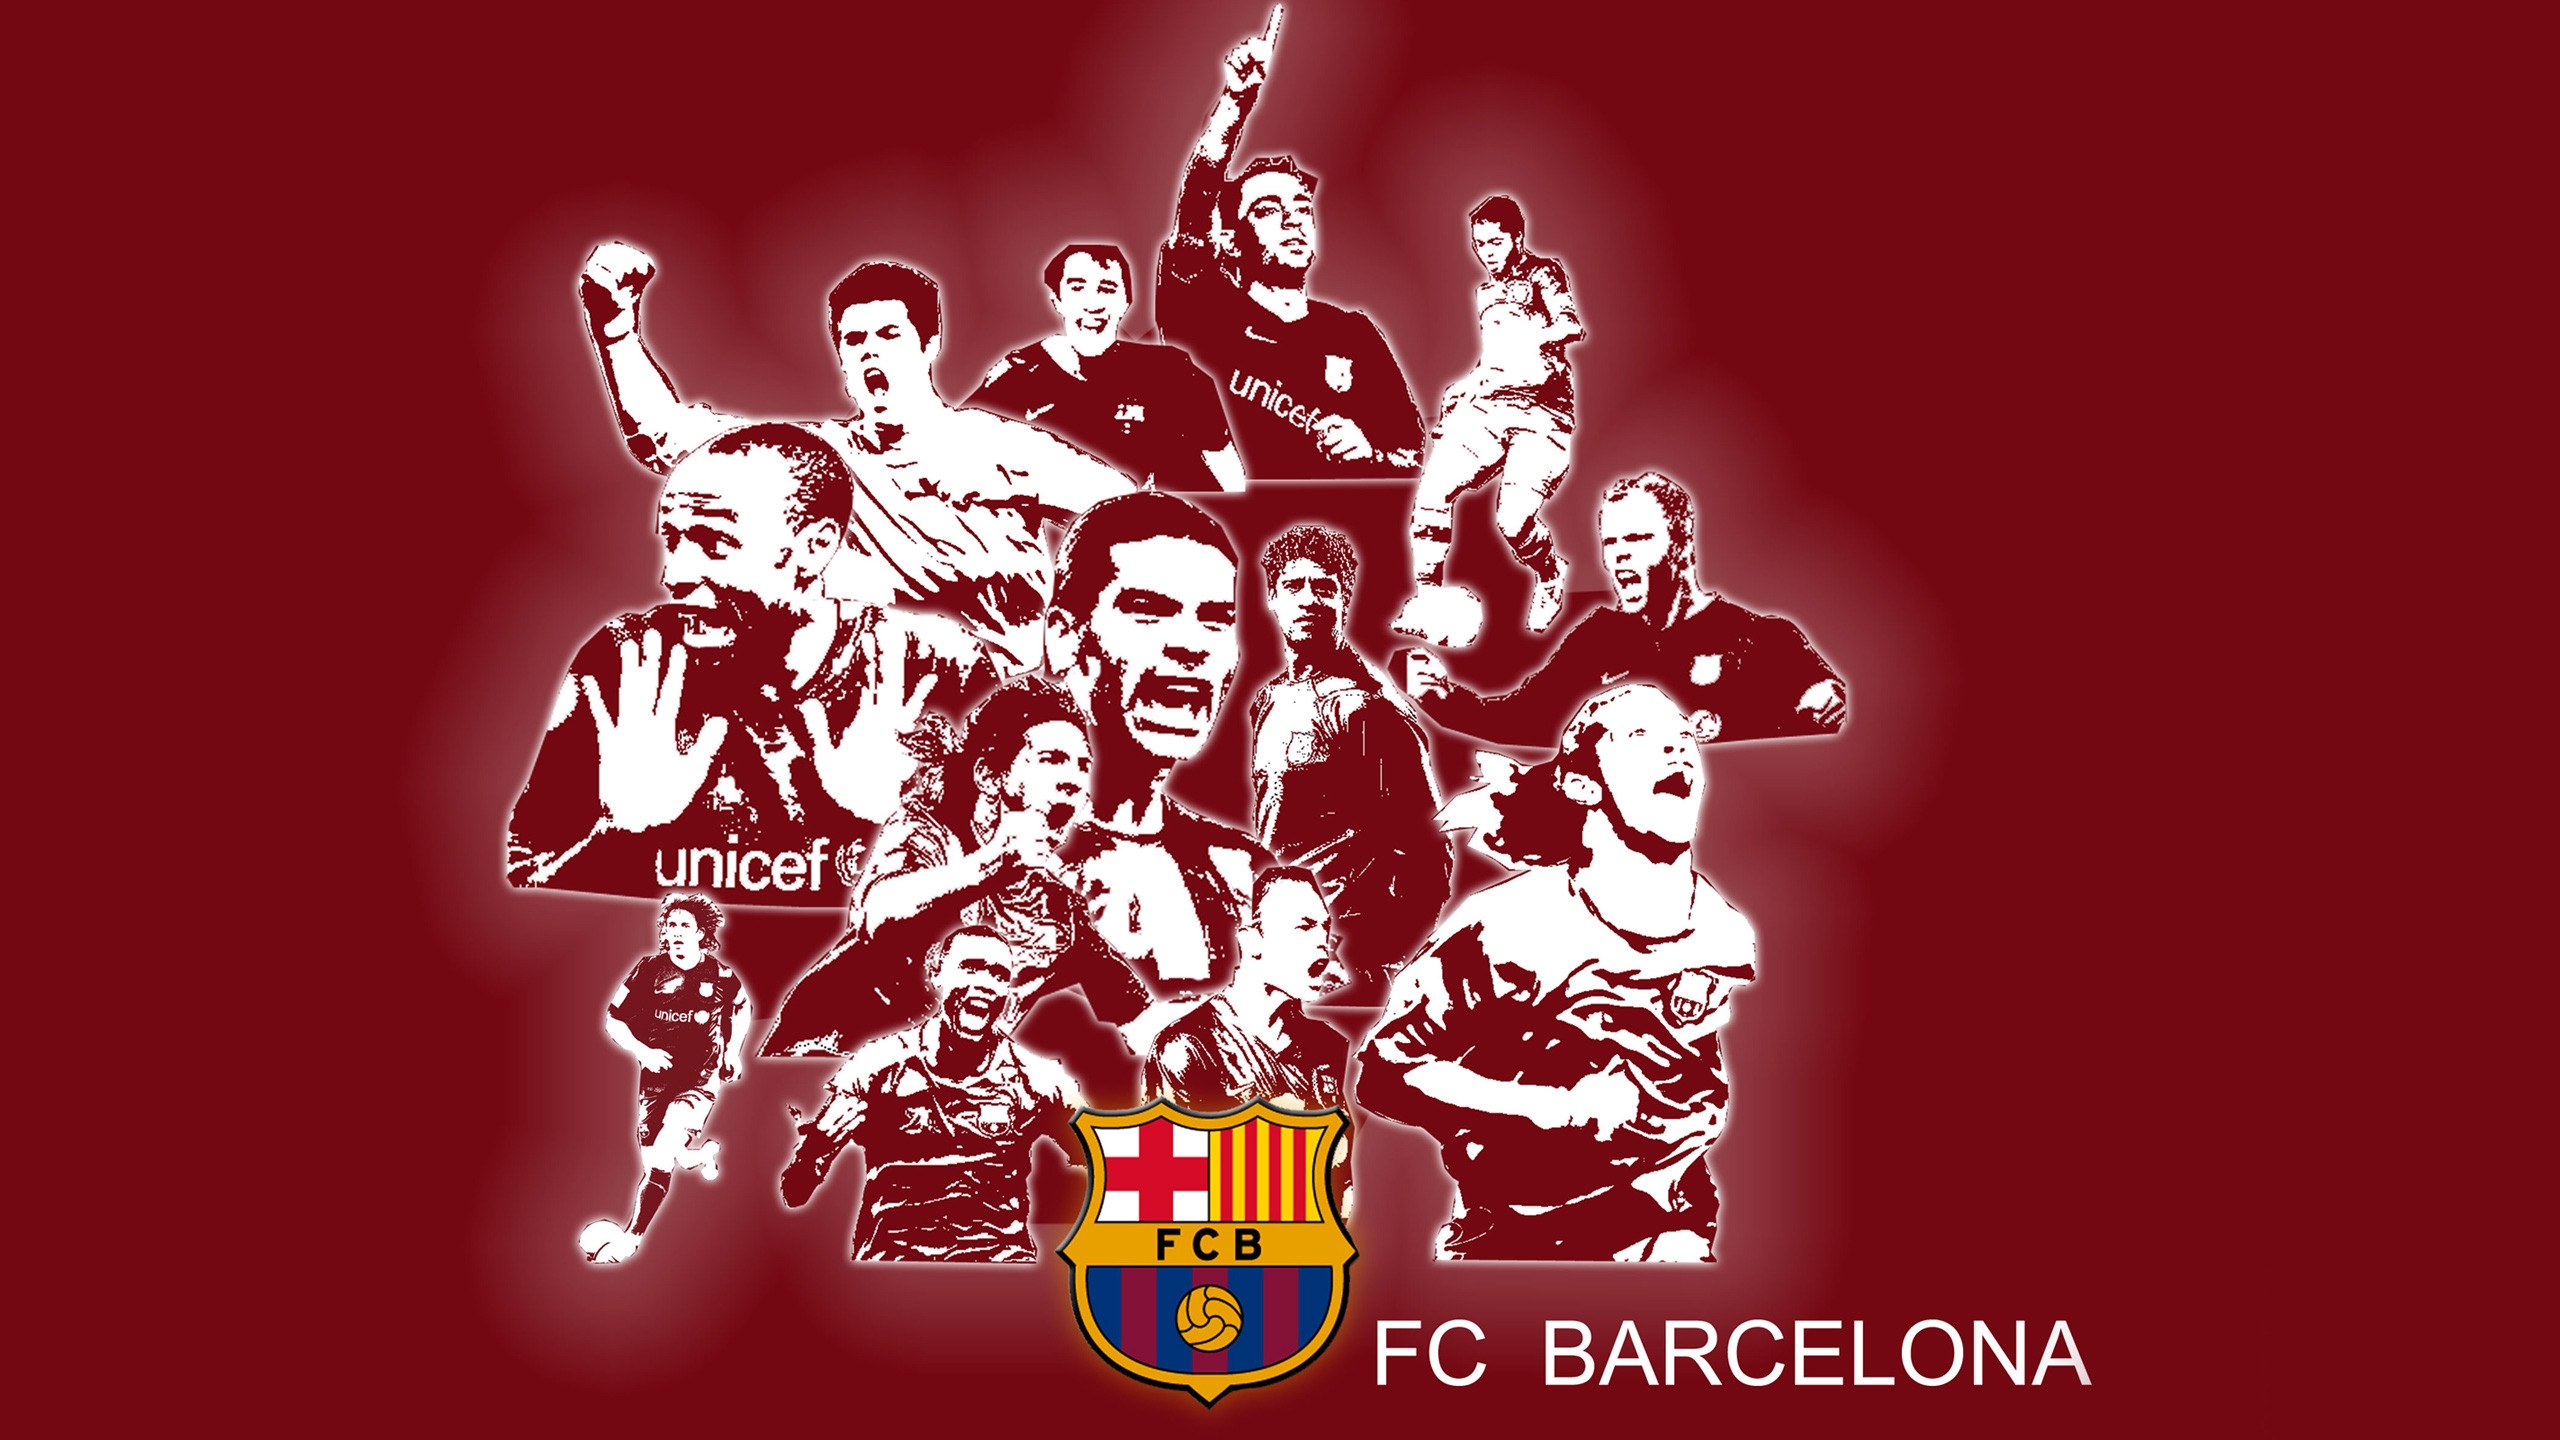 FC Barcelona for 2560x1440 HDTV resolution